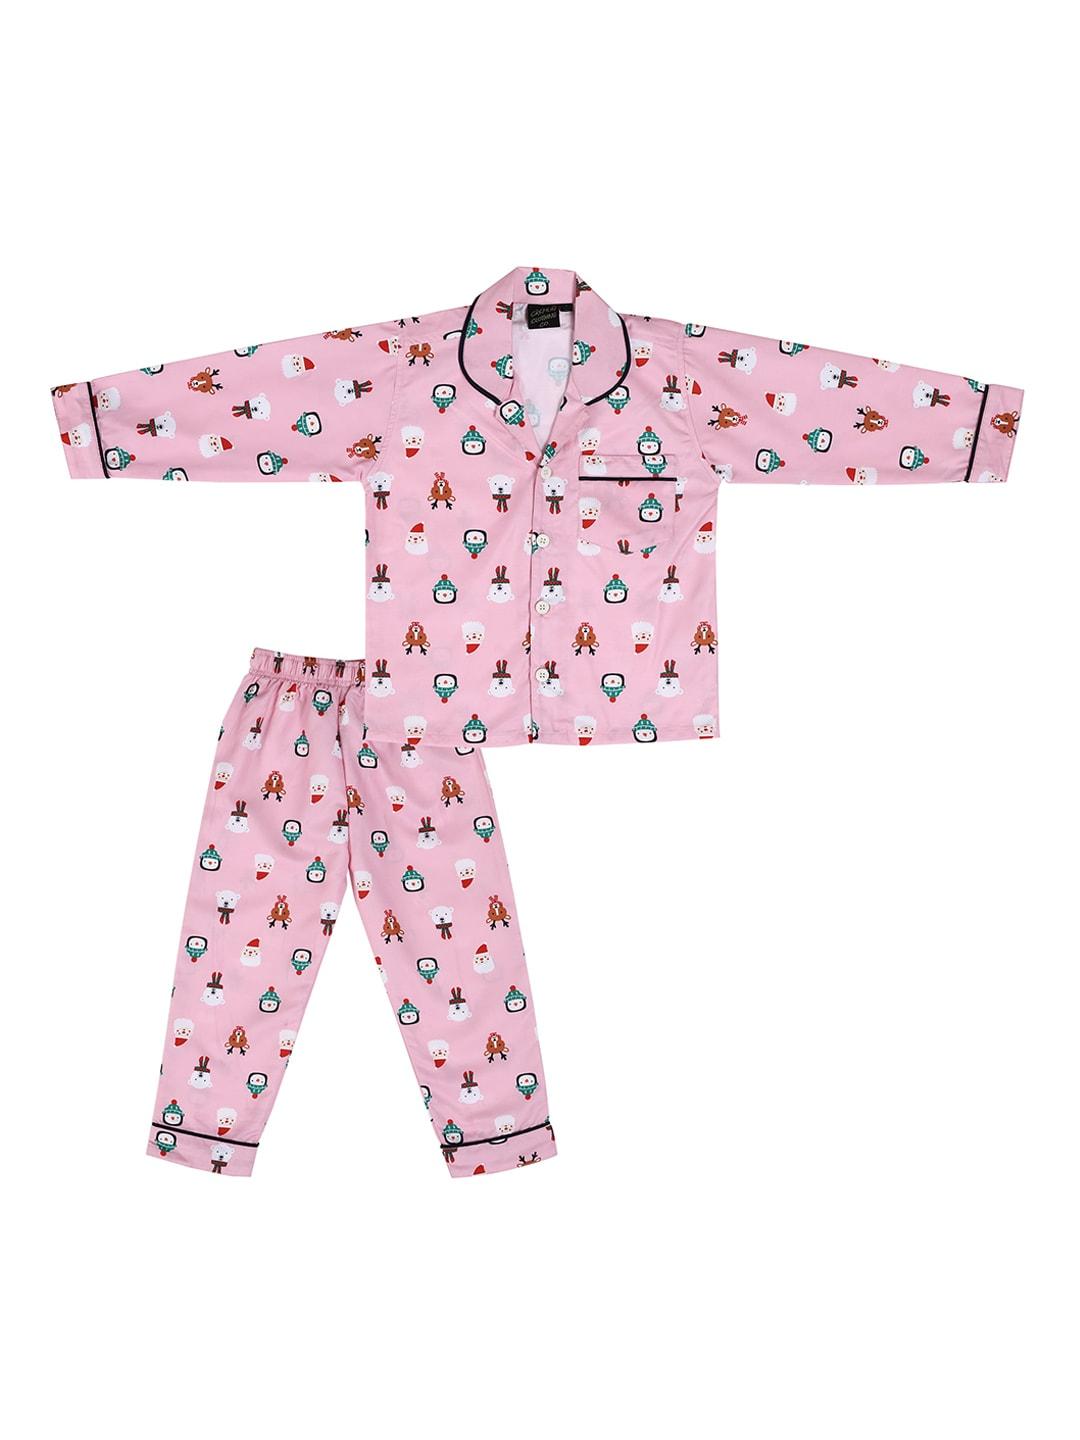 cremlin clothing kids pink & white printed modal nightsuit